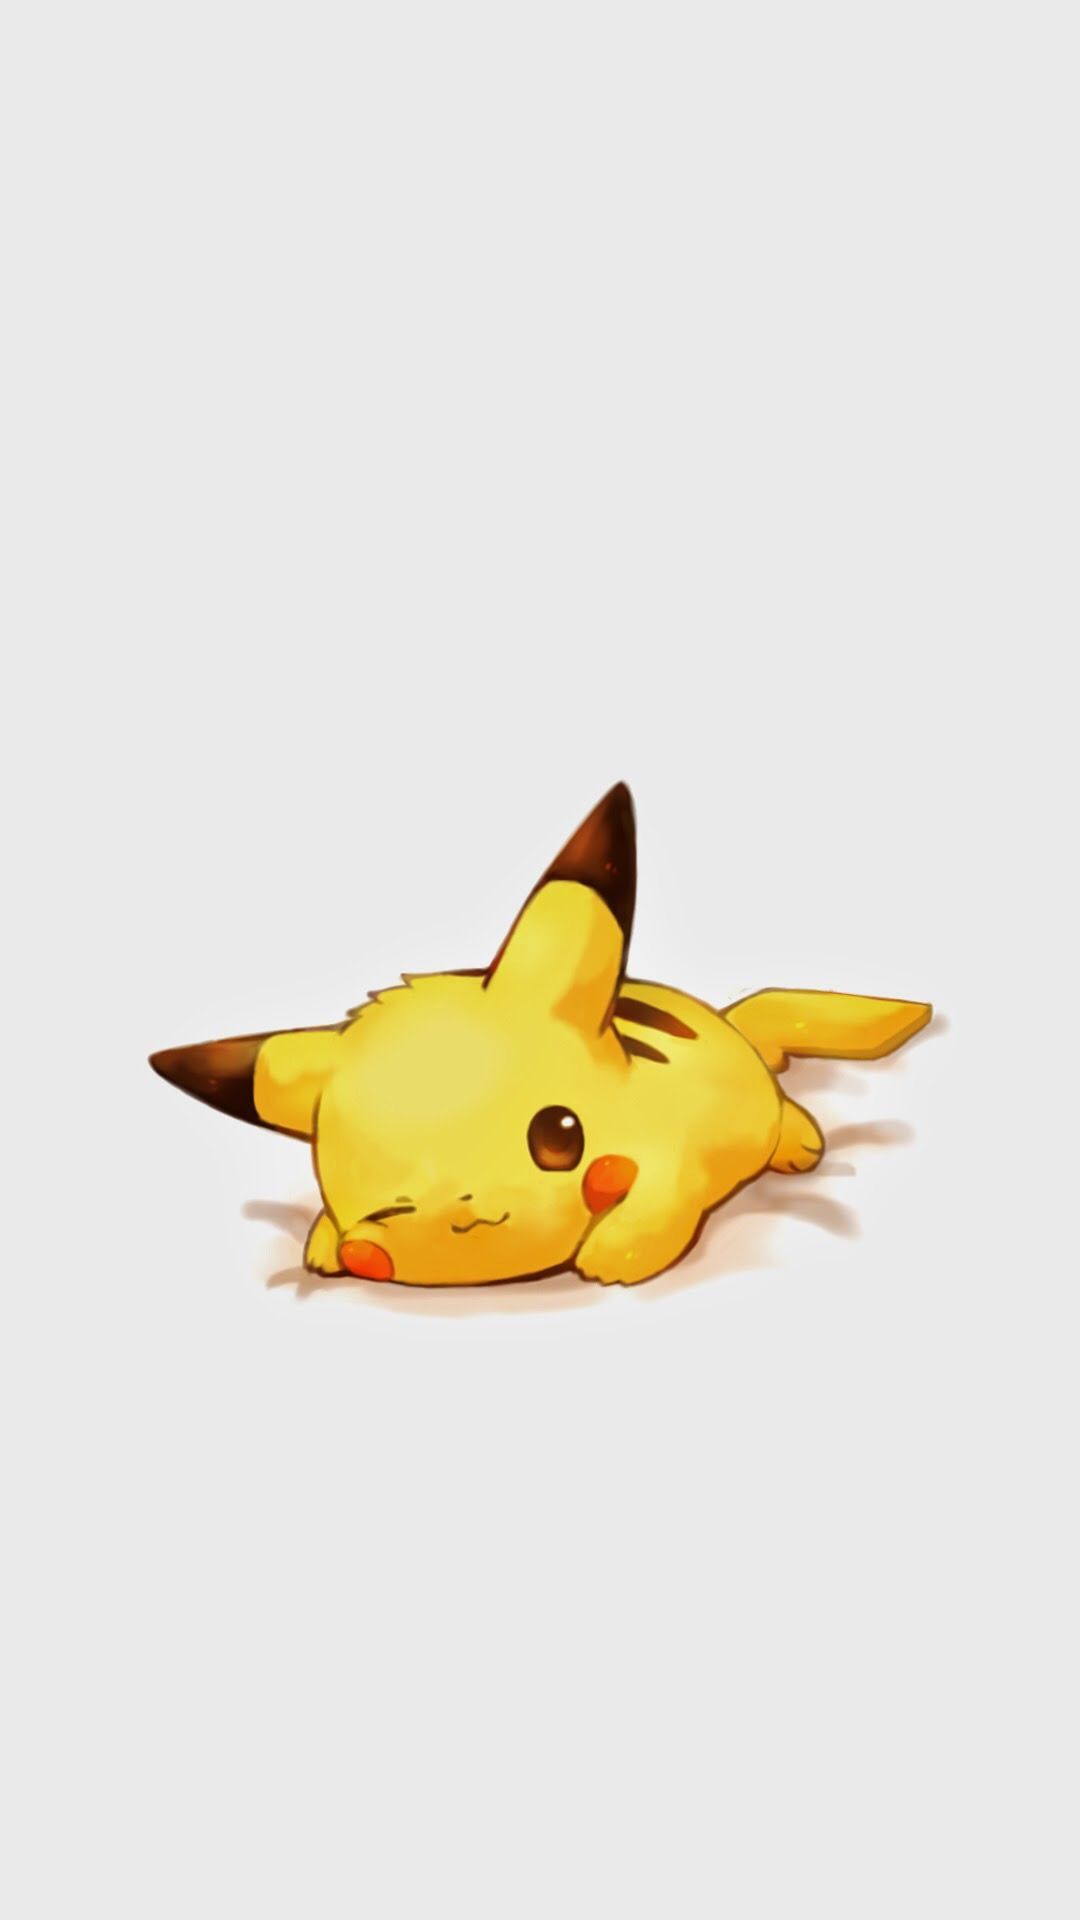 ¡Toque la imagen para obtener un fondo de pantalla Pikachu más divertido y lindo! Pikachu - @ mobile9